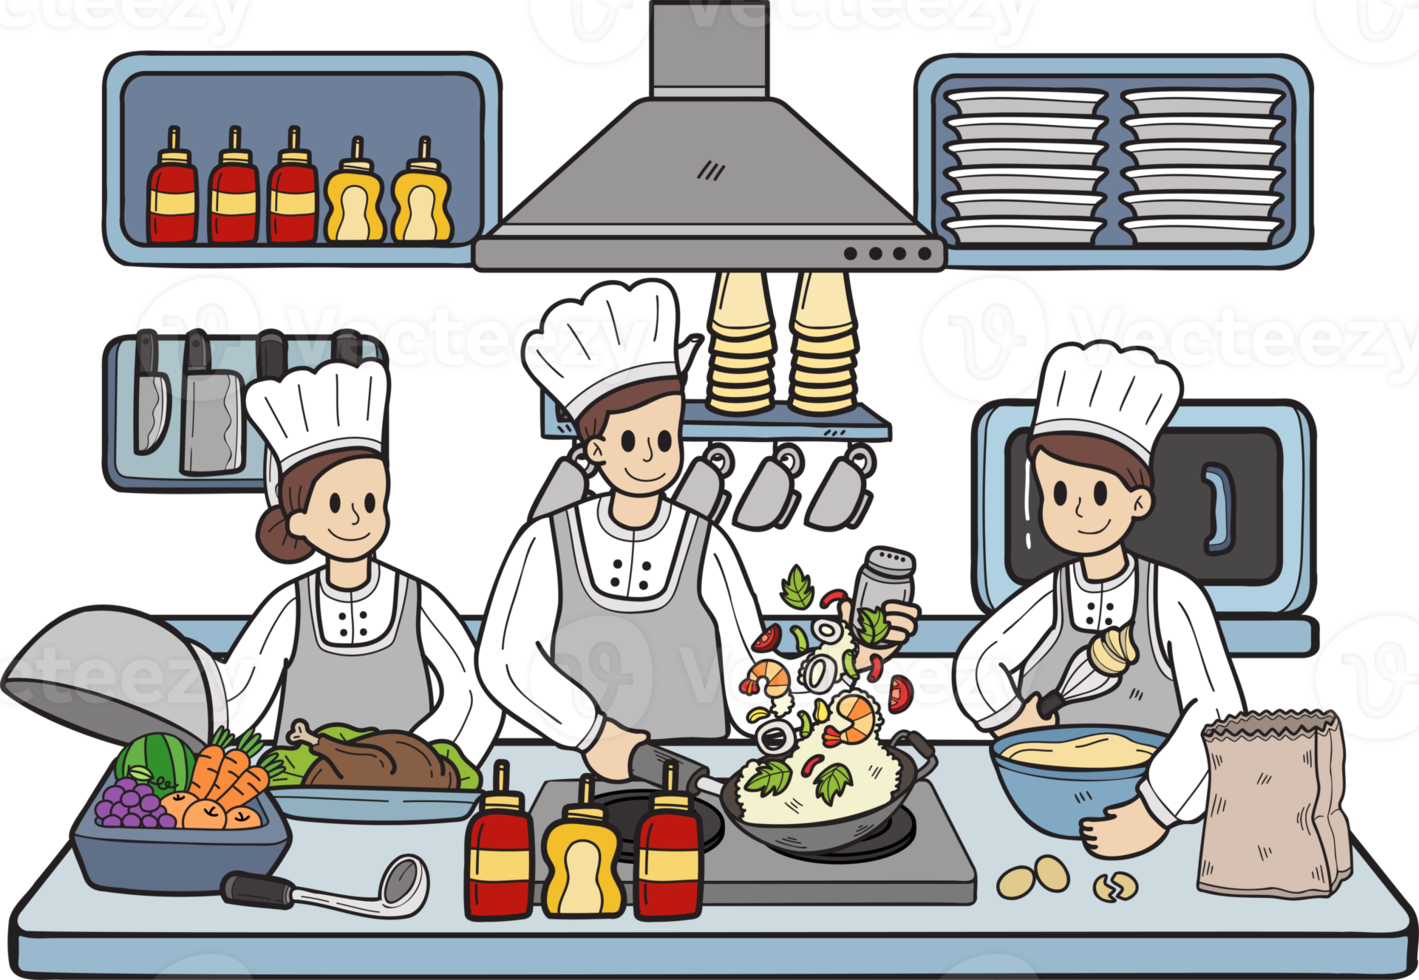 chef desenhado à mão está cozinhando na ilustração da cozinha no estilo doodle png